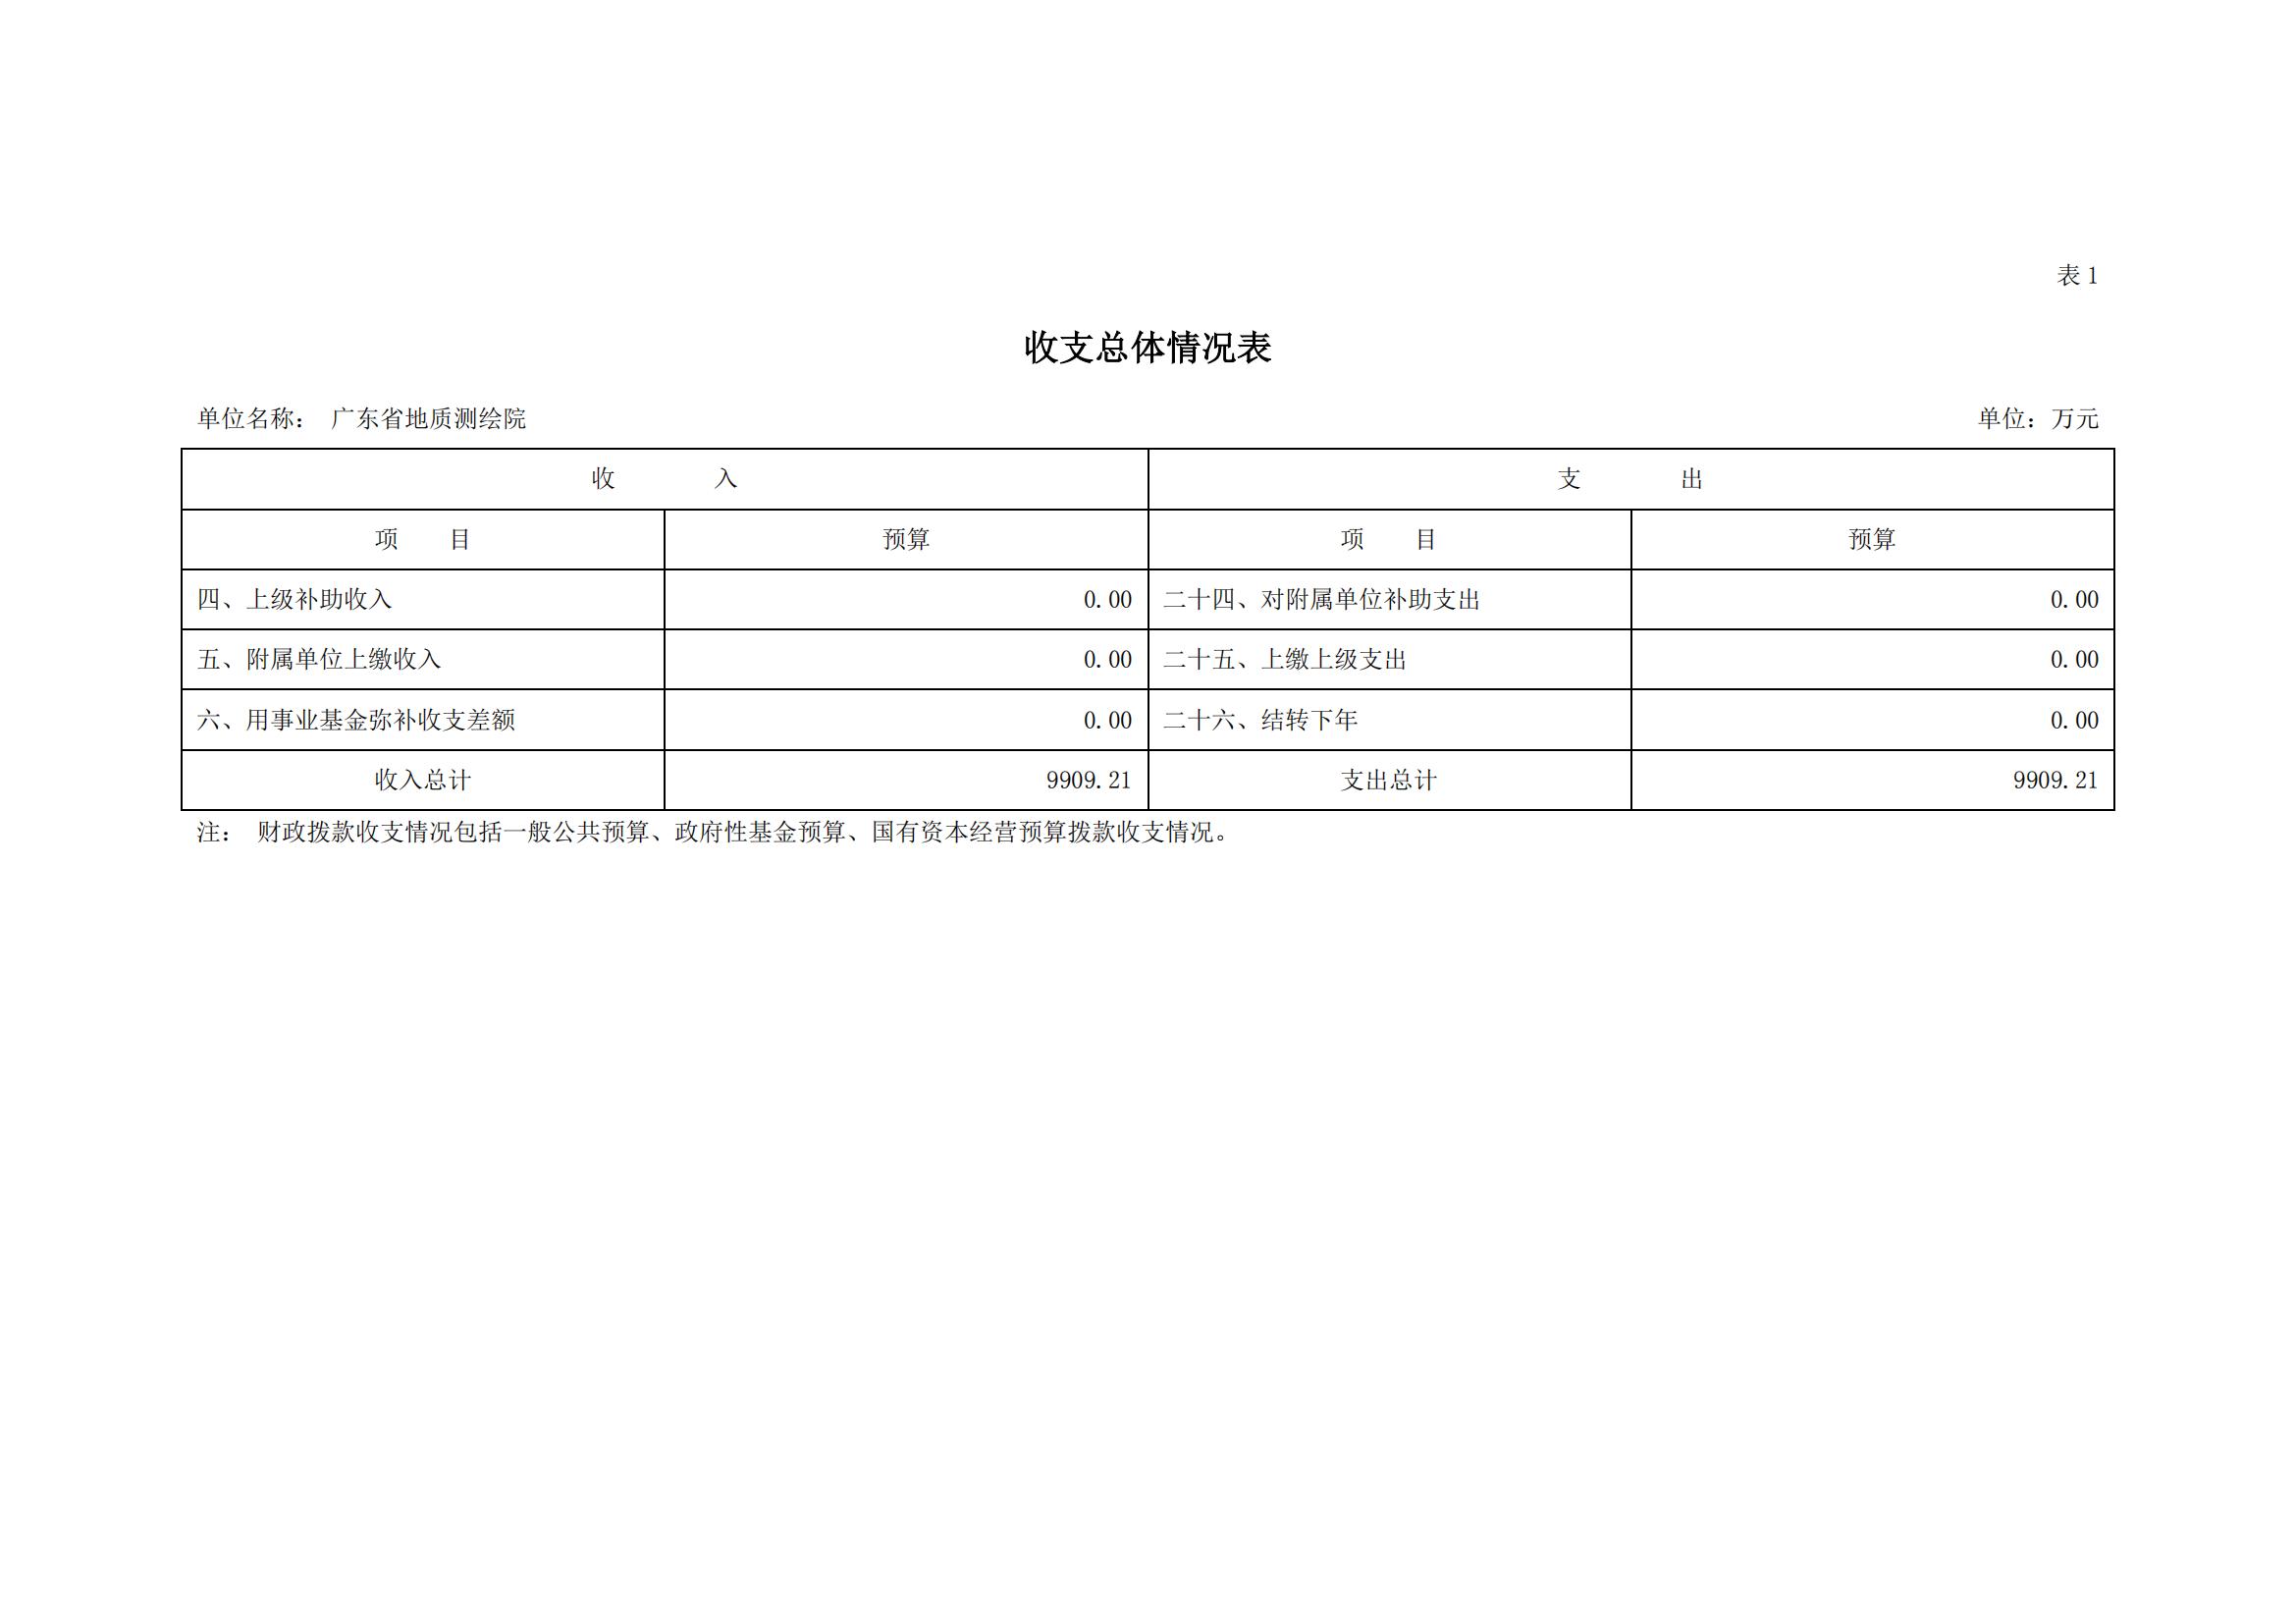 2021年广东省地质测绘院部门预算公开_05.jpg